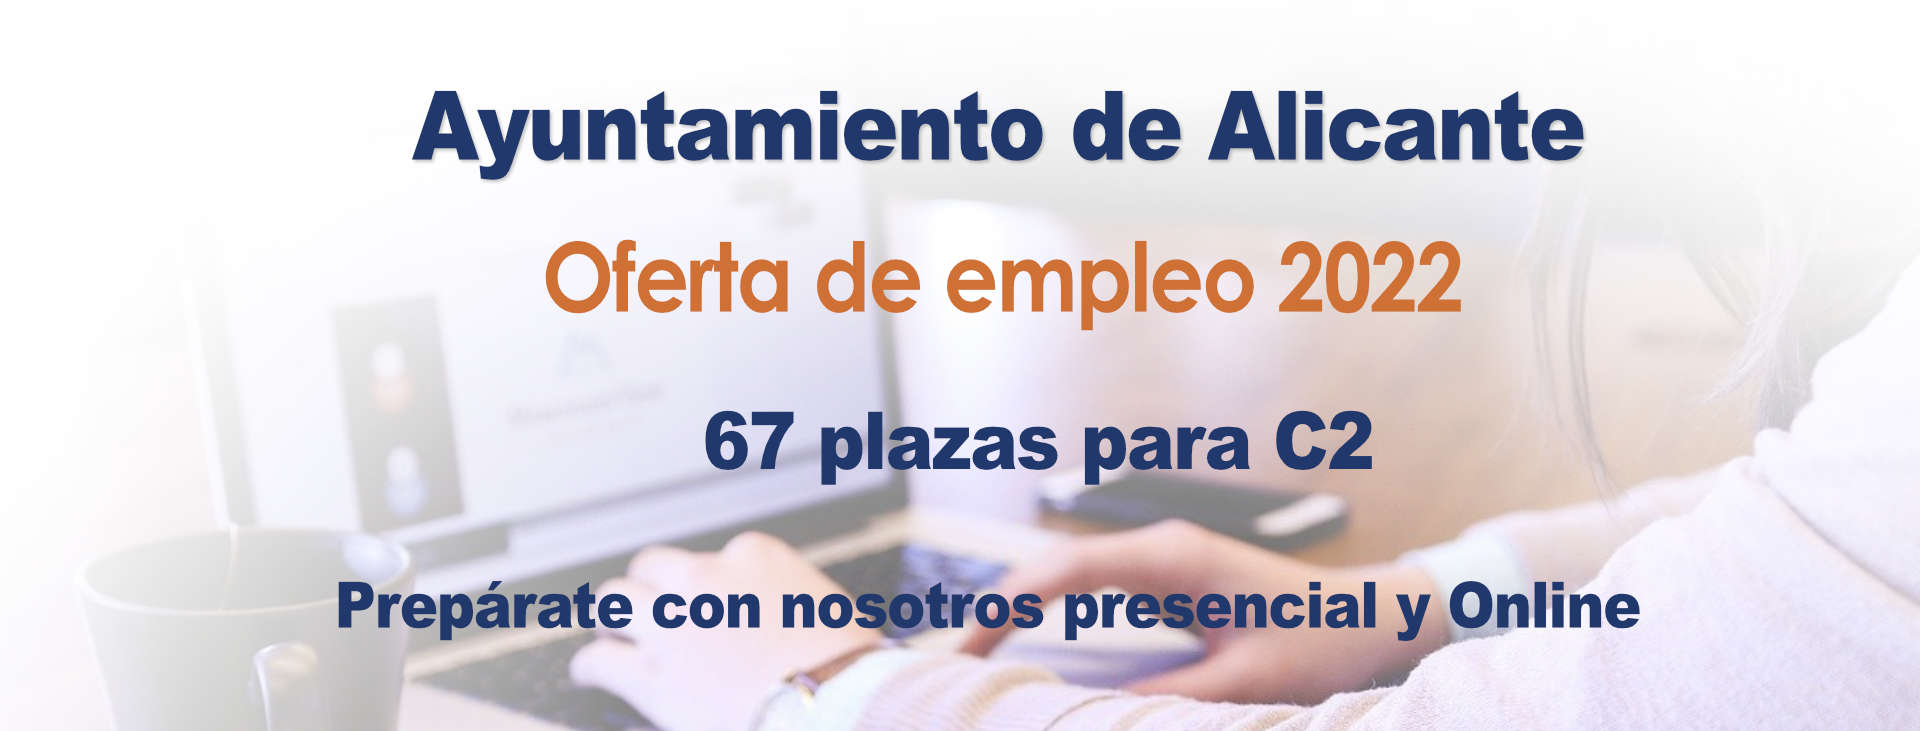 Oferta Empleo Ayuntamiento de Alicante 2022